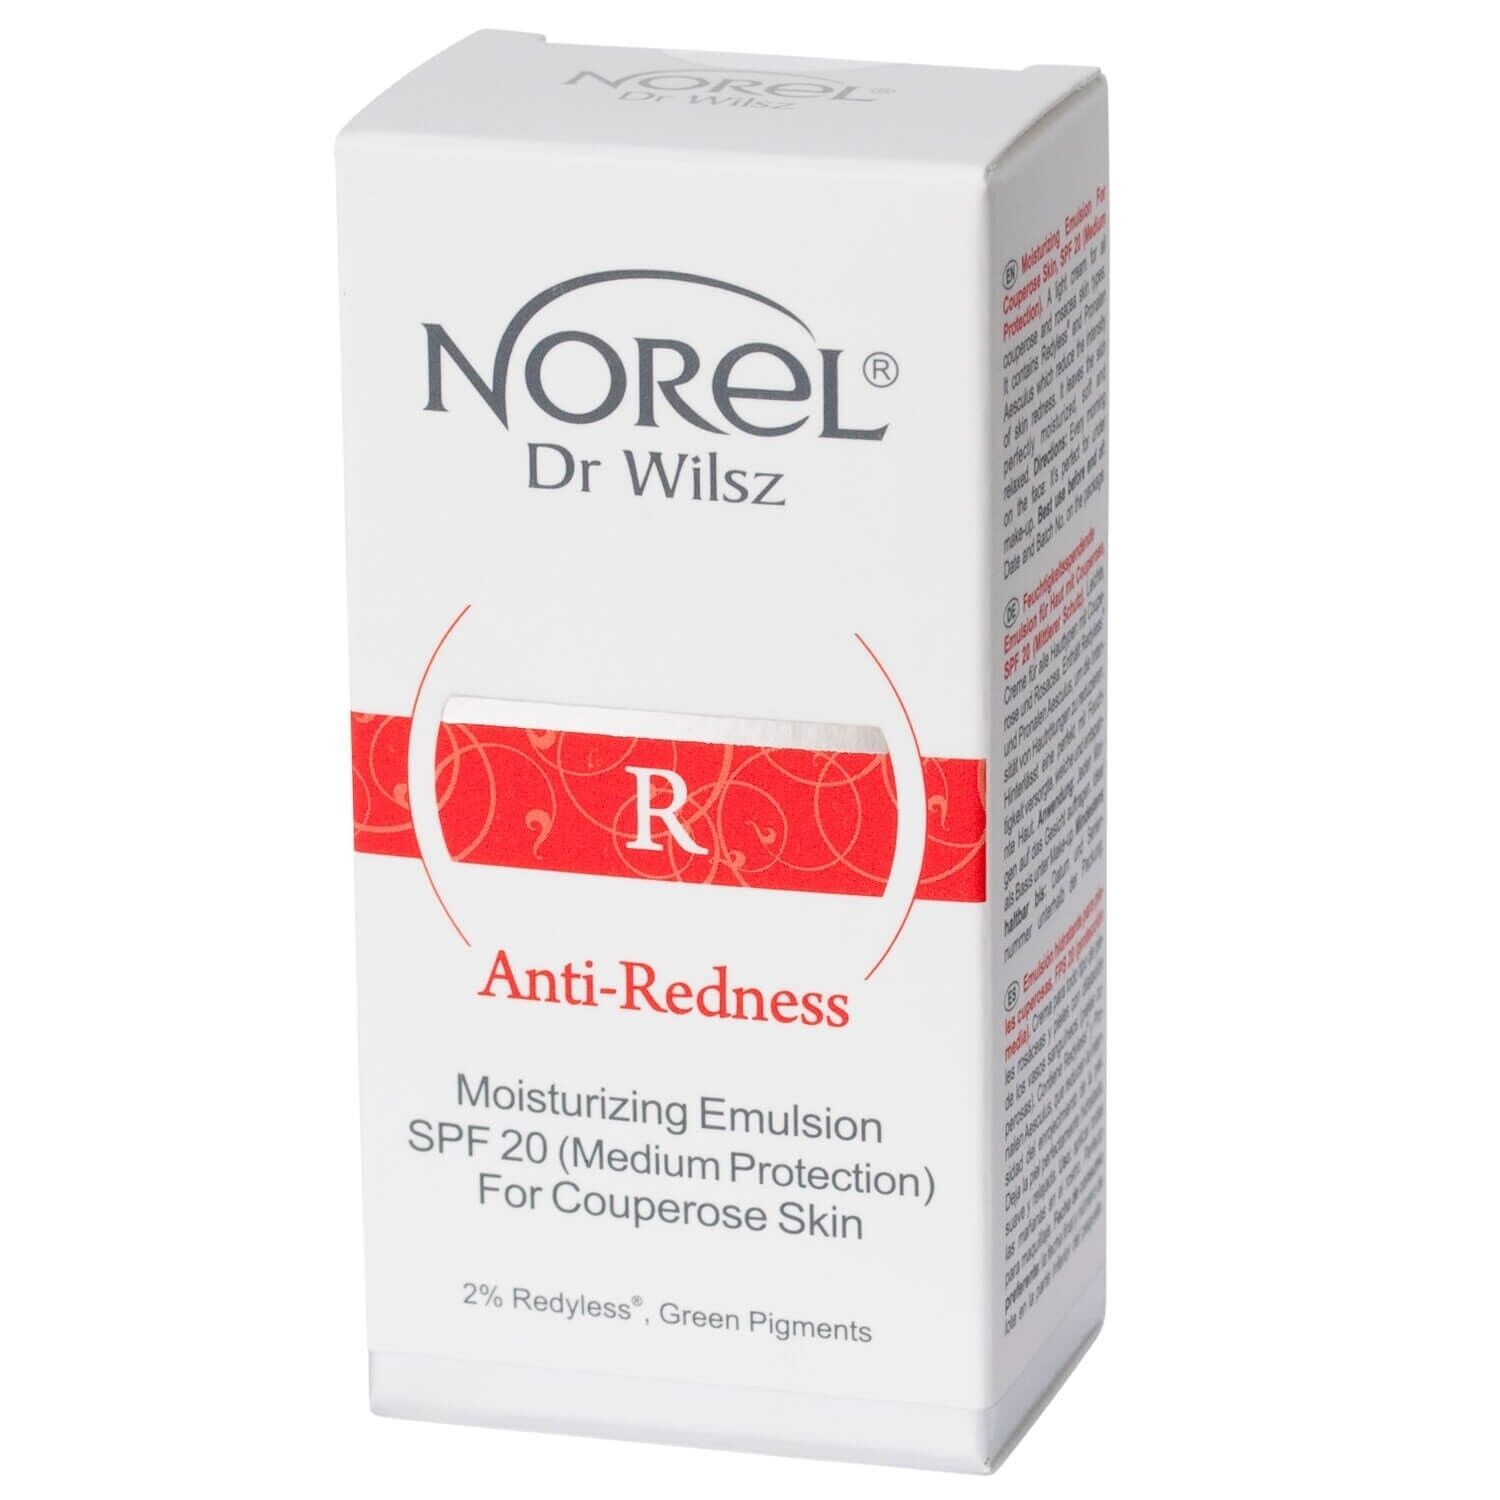 Norel Anti Redness Moisturizing Emulsion Skin SPF20 15ml